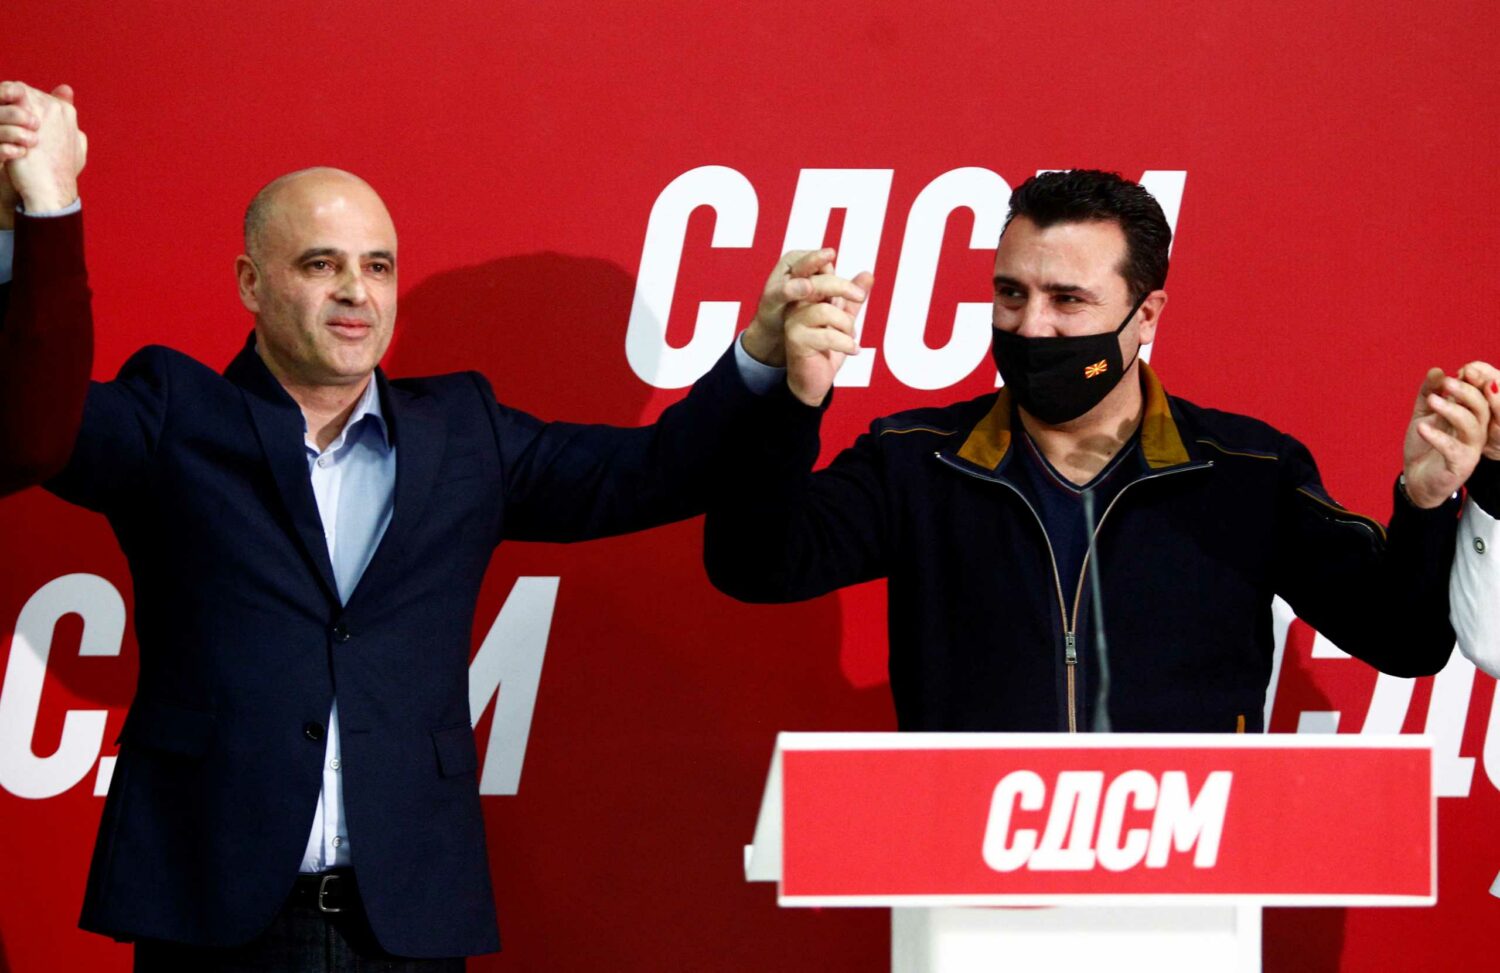 Βόρεια Μακεδονία: Ο Ντιμίταρ Κοβάτσεφσκι έλαβε την εντολή σχηματισμού κυβέρνησης